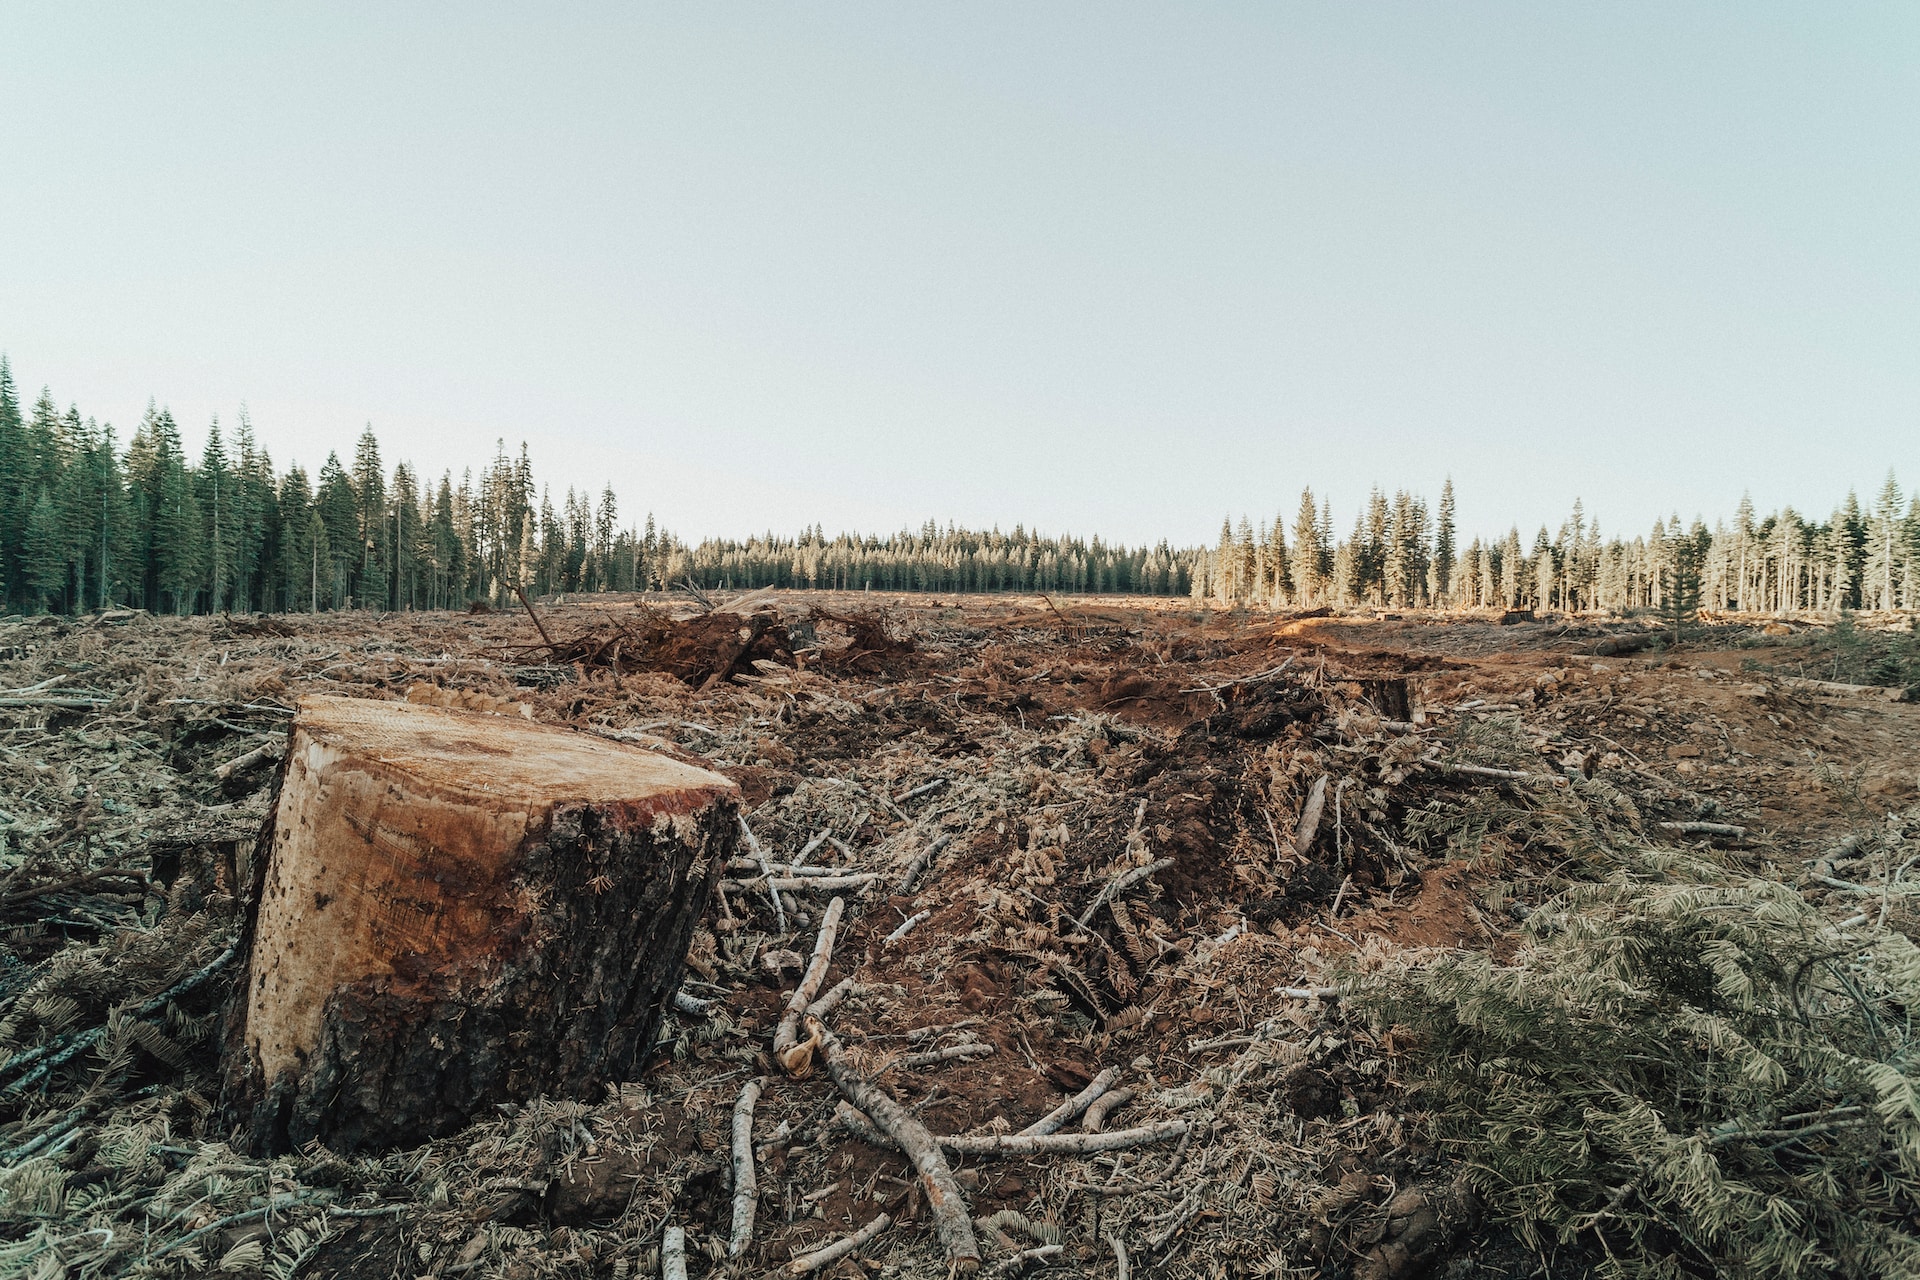 EU-deforestation-regulation-ohana-public-affairs